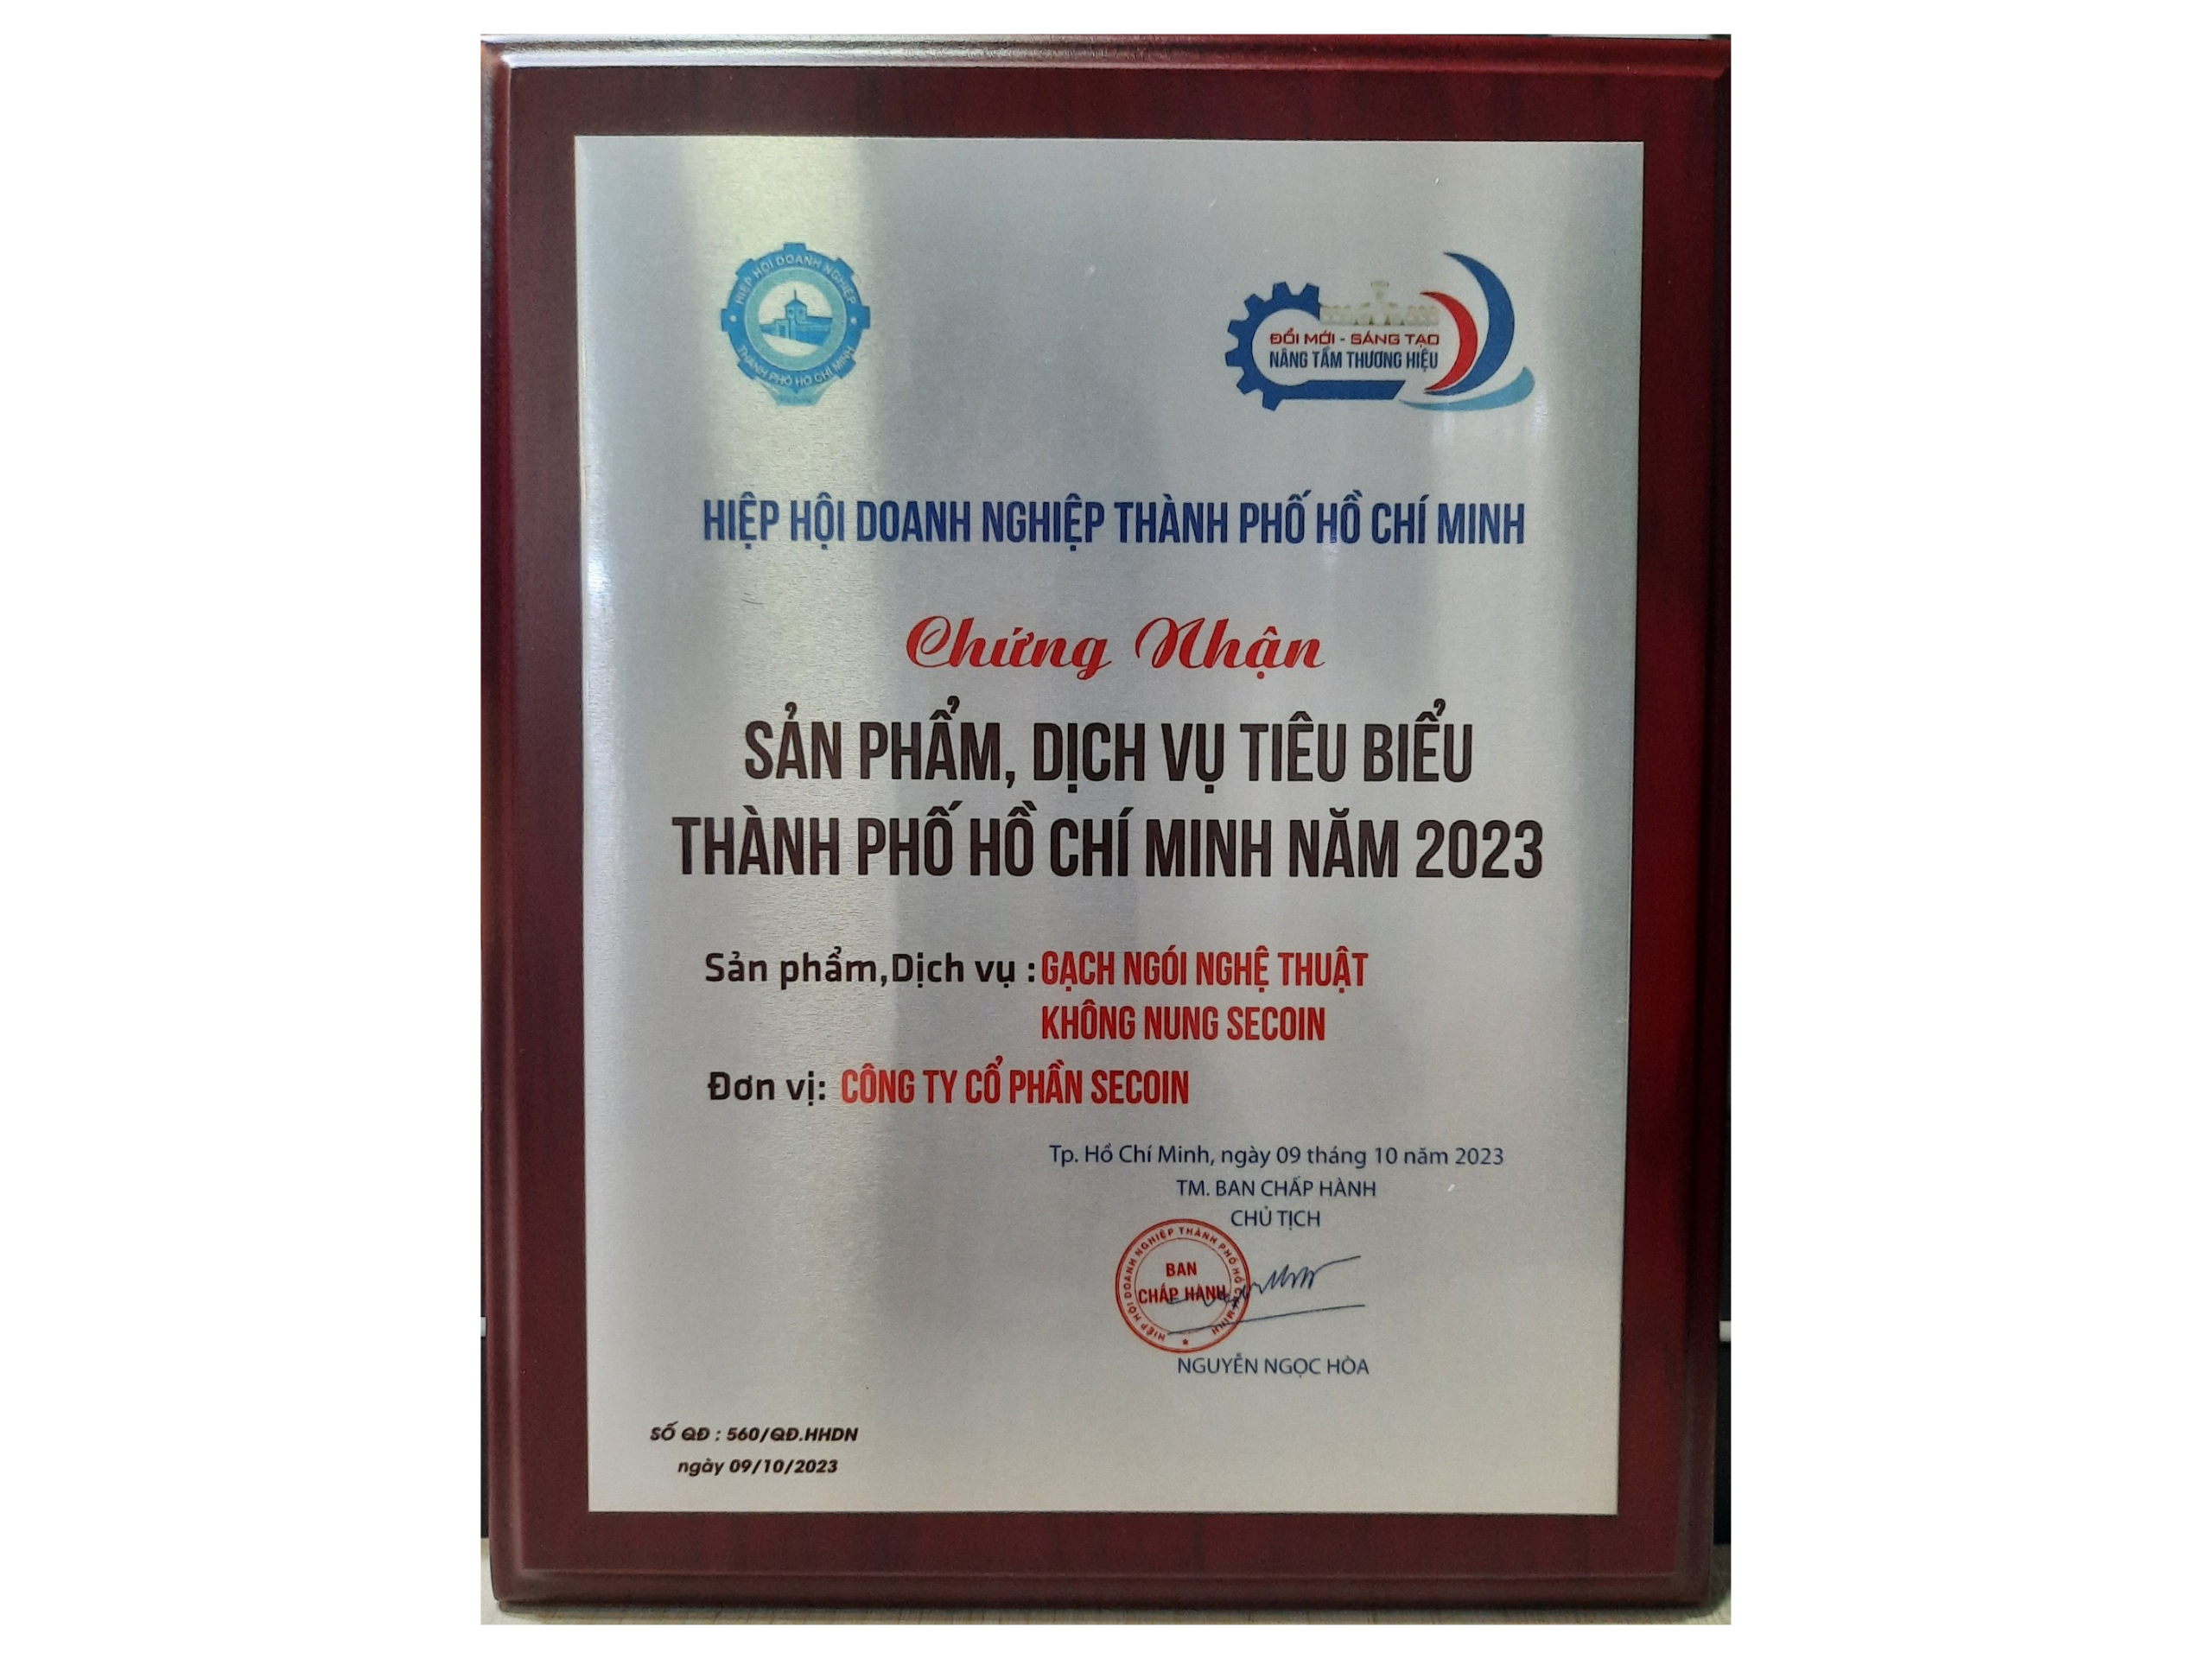 Chúc mừng Secoin đạt danh hiệu Sản phẩm, Dịch vụ tiêu biểu TP.HCM 2023